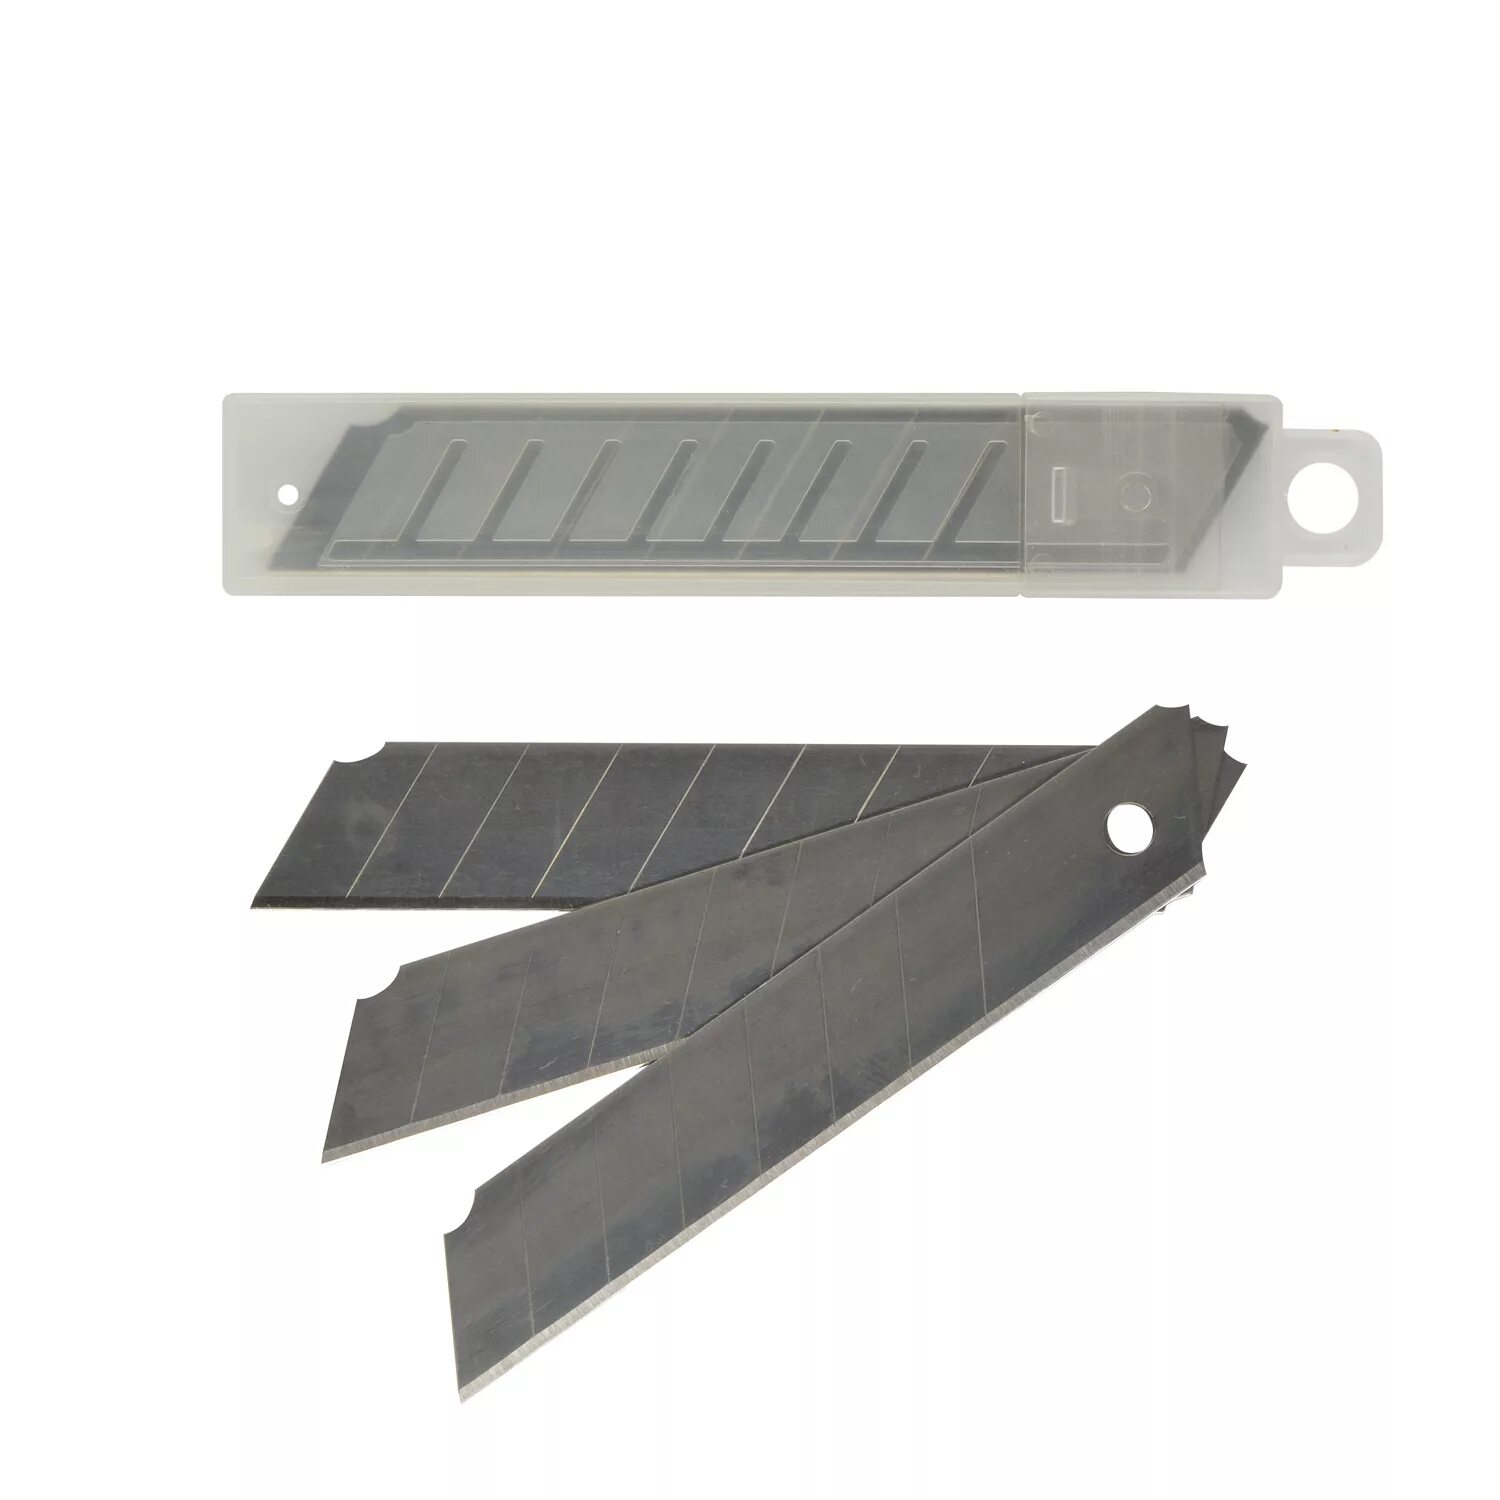 Купить лезвия для ножа 18 мм. Лезвия для ножа Systec 18 мм, 10 шт. Santool лезвия для ножа 18мм. Лезвия для ножа 18 мм (20/ 400) vertextools. Лезвия для канцелярского ножа 18 мм.